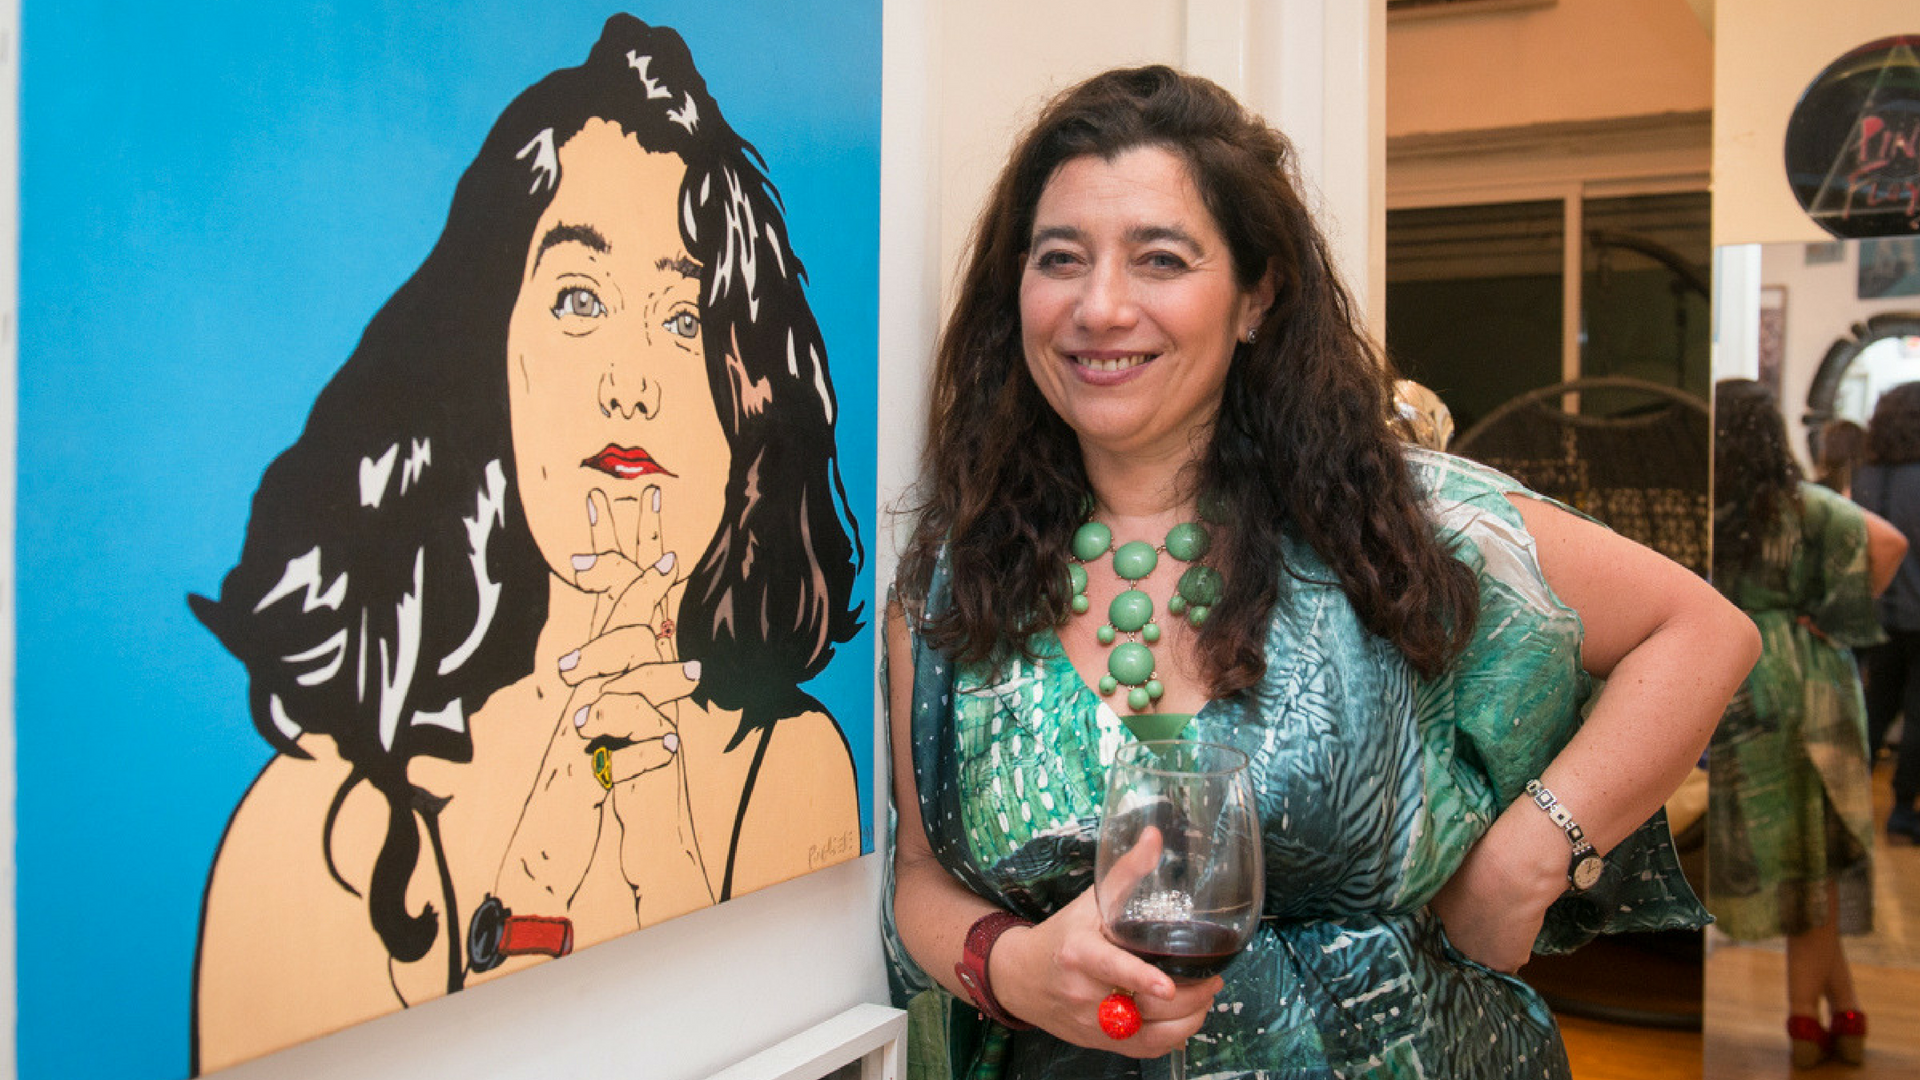 Mariela Ivanier y una invitación a contar la experiencia del arte, en primera persona